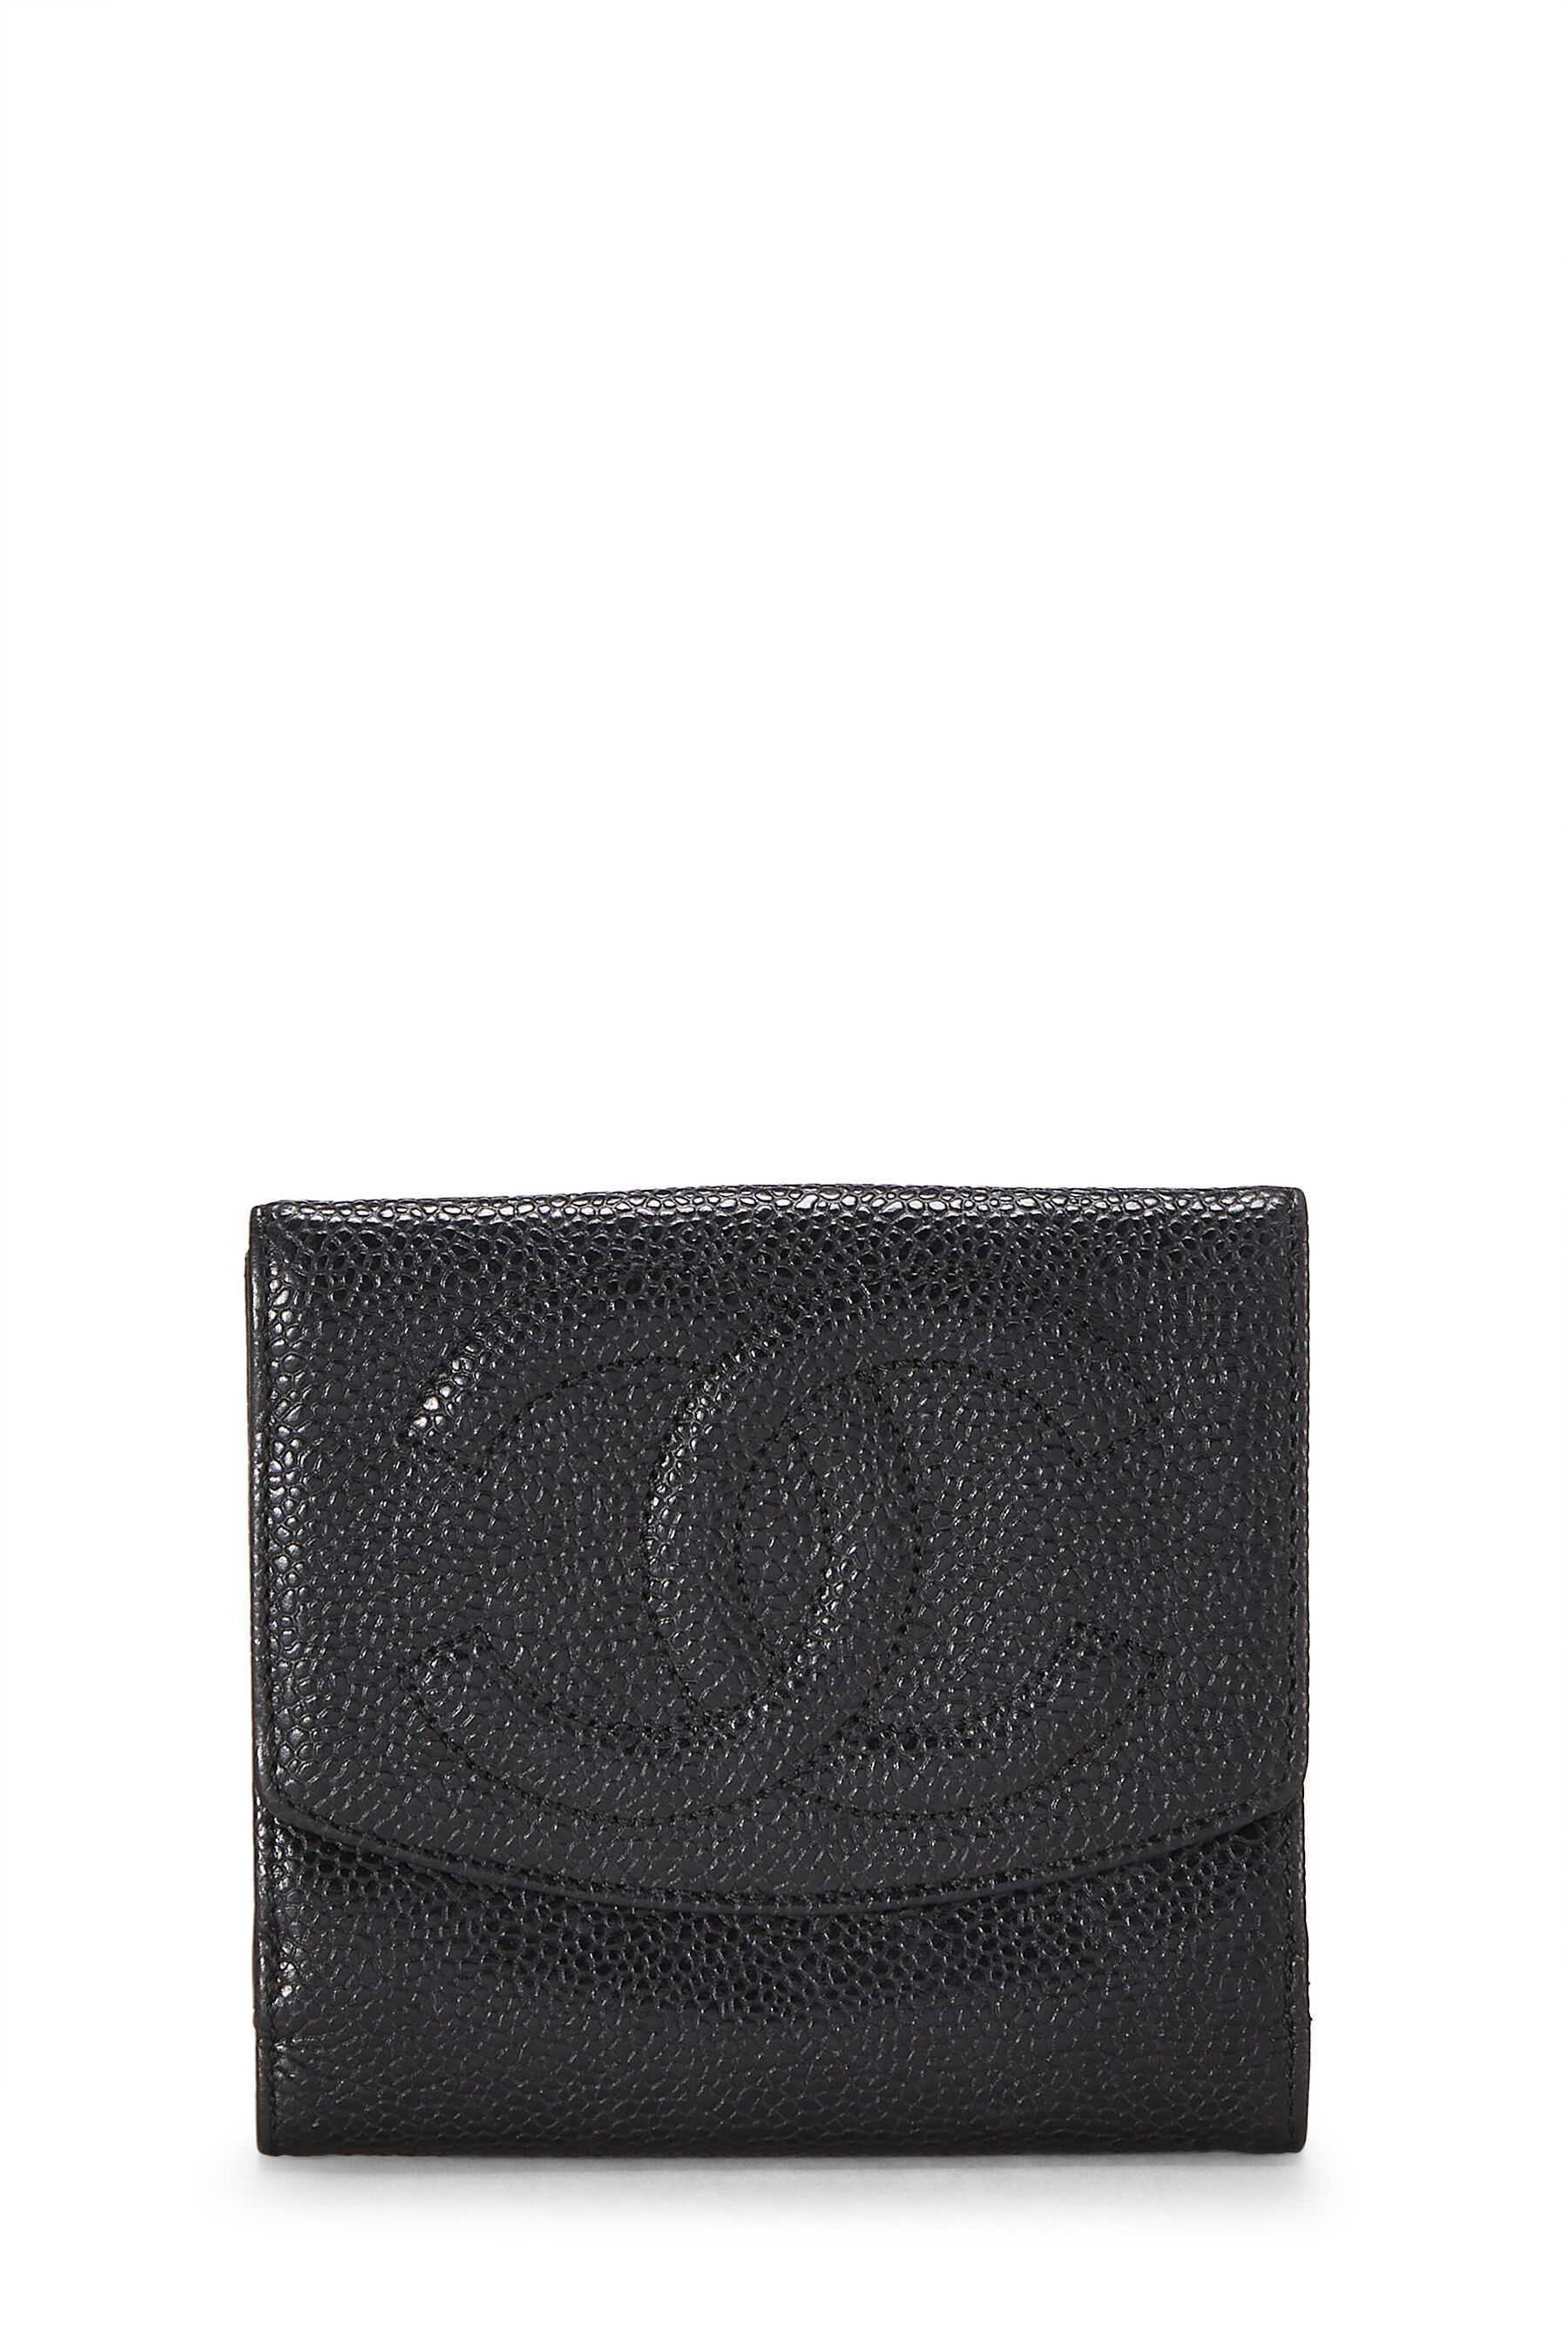 Black Caviar Boy Compact Wallet – Opulent Habits